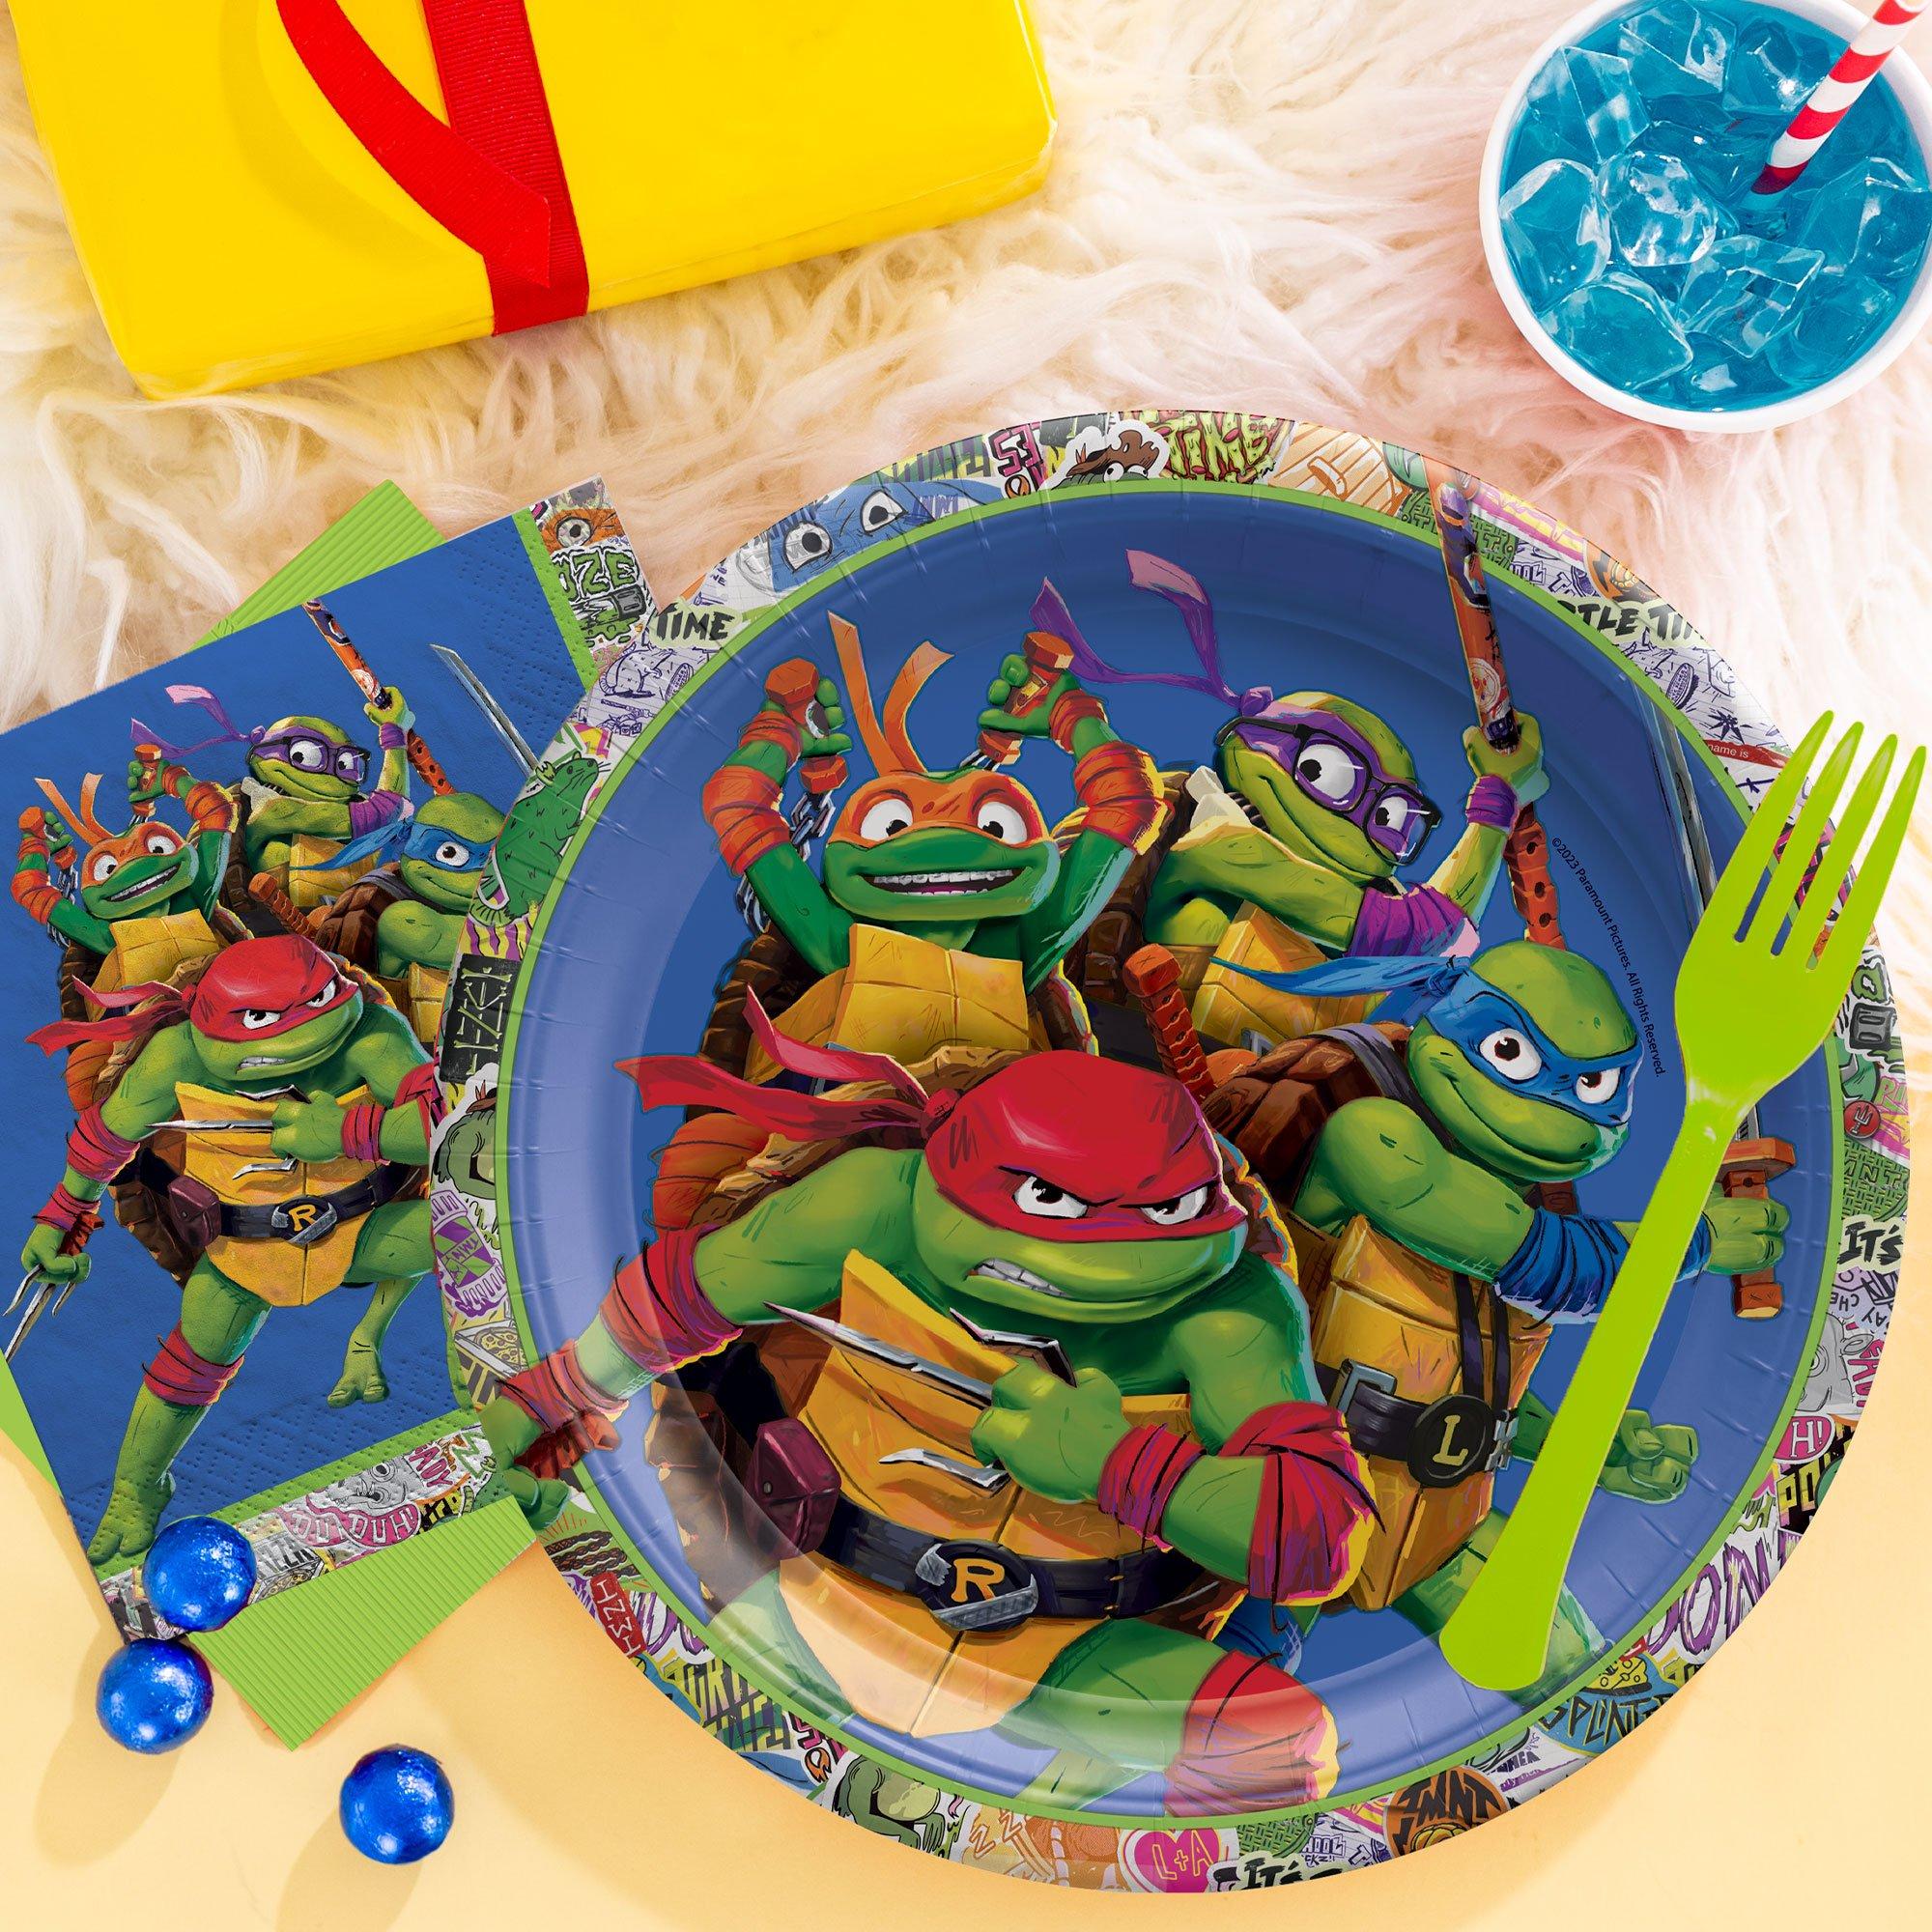 Teenage Mutant Ninja Turtles Plate, Bowl, and Utensils Set (1A)